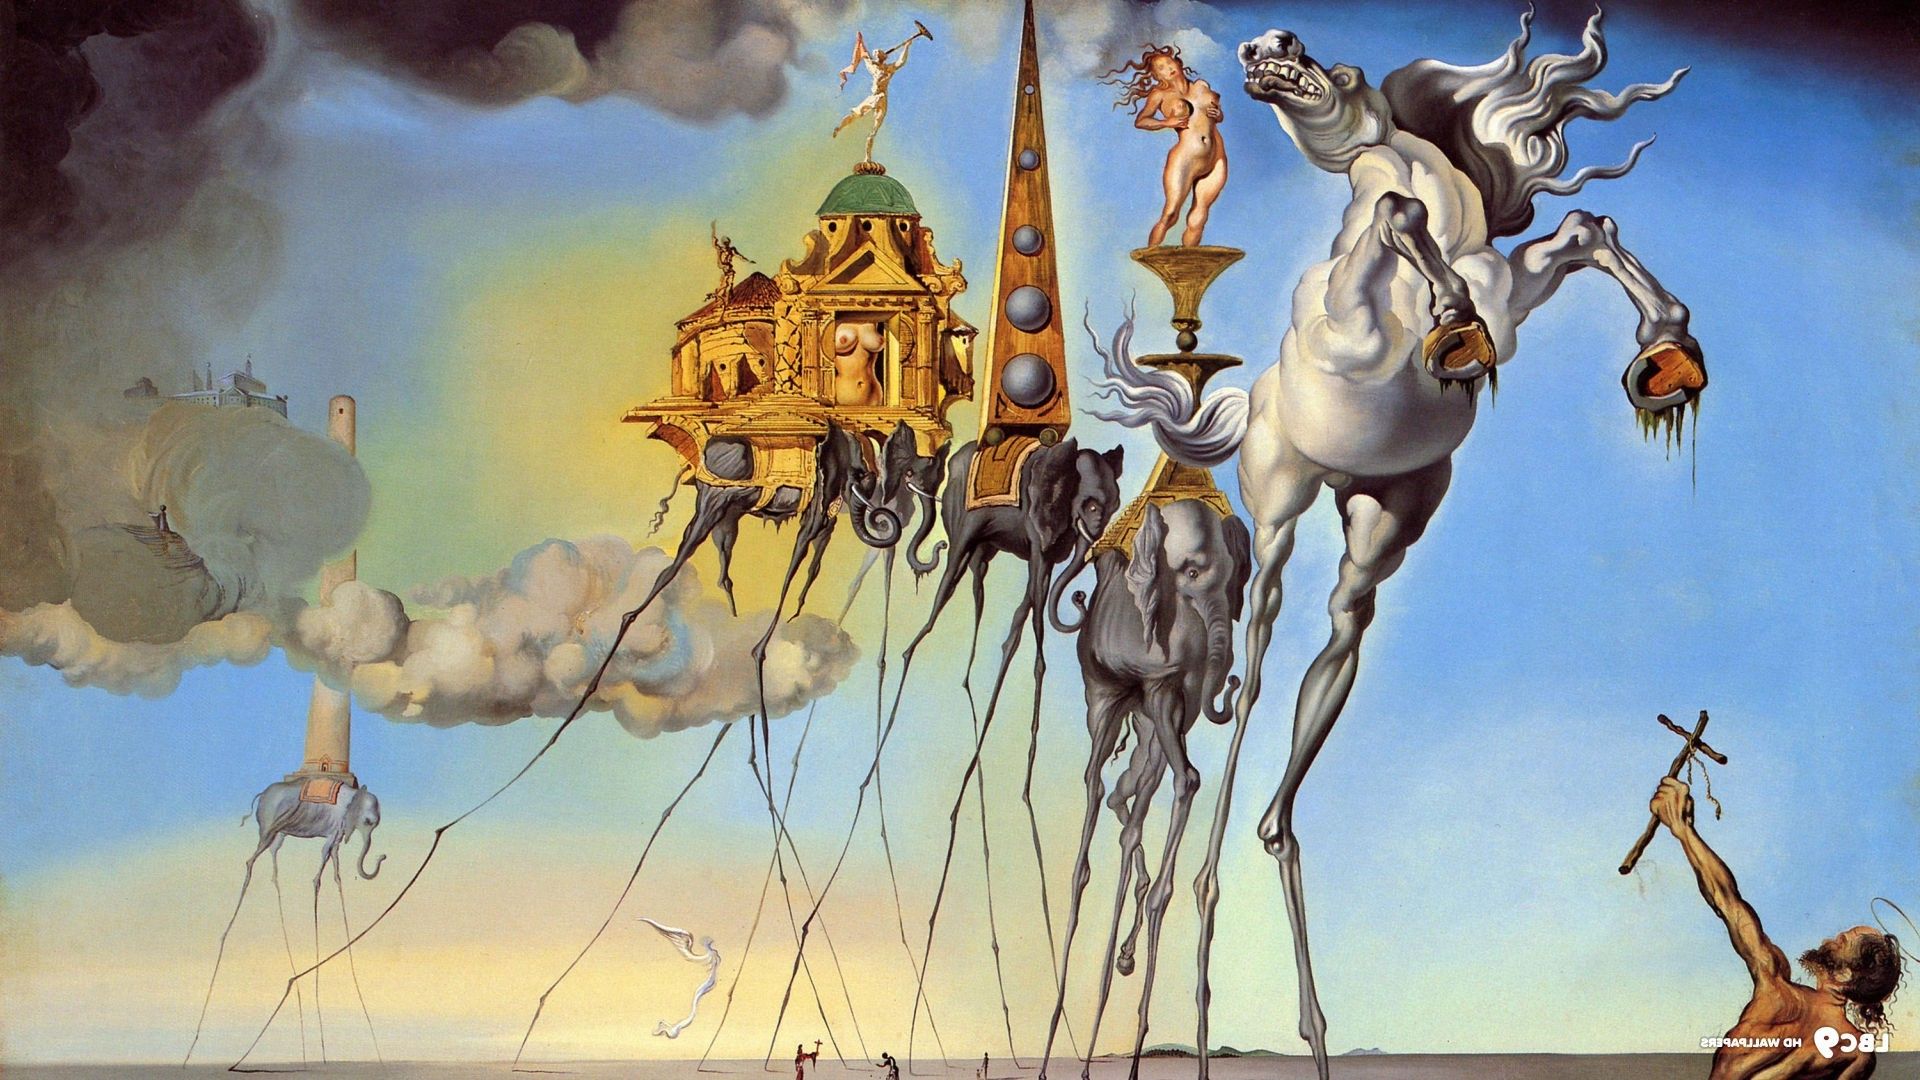 Salvador Dalí, Painting, Fantasy Art, Skull, War, Clocks, Time